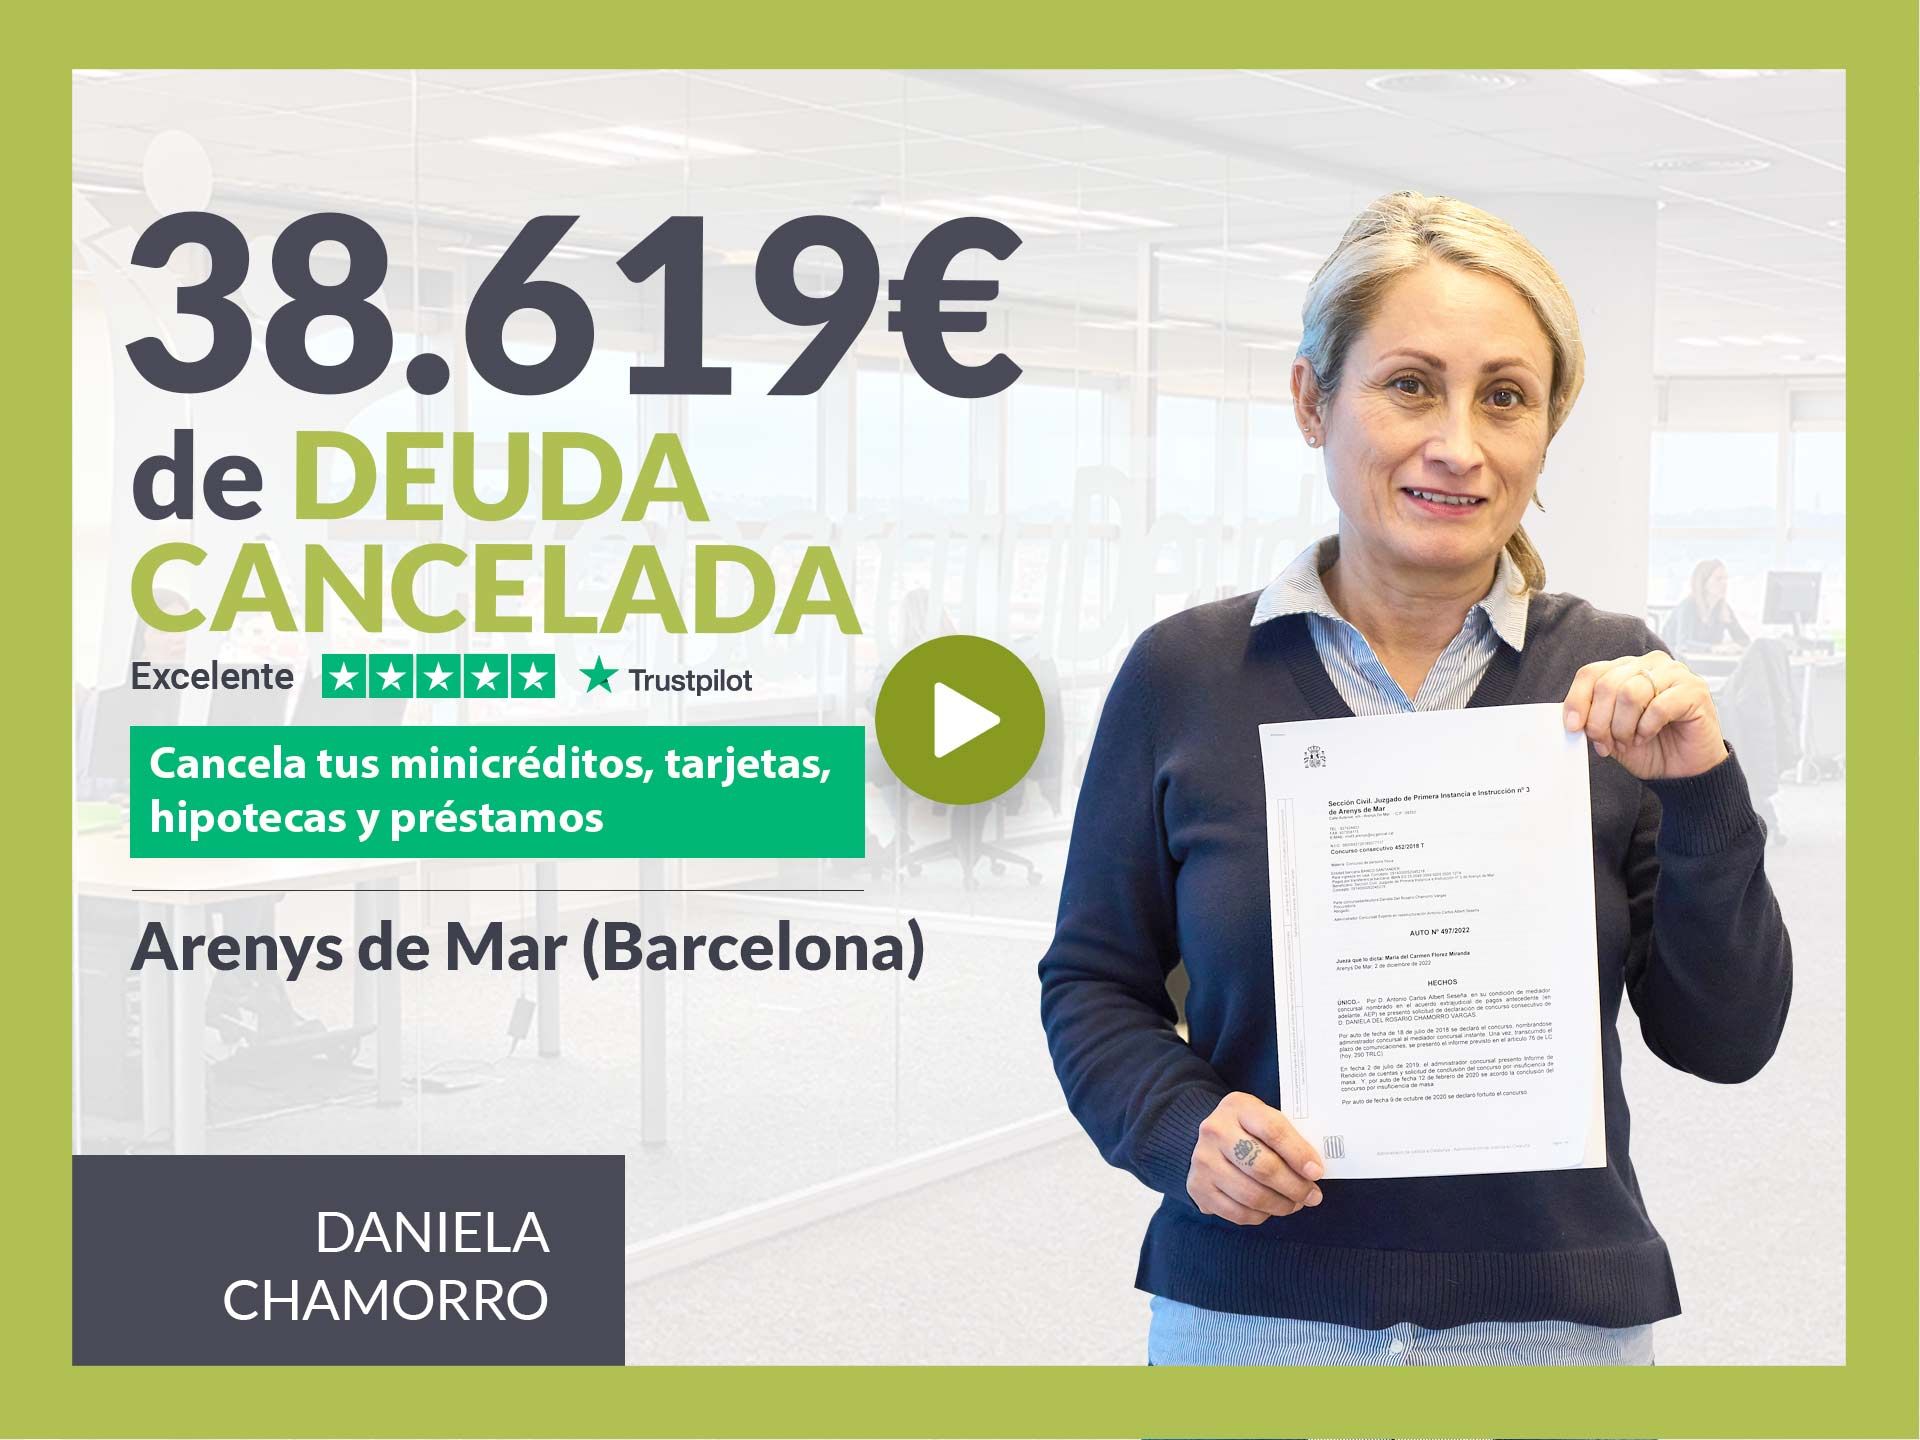 Repara tu Deuda Abogados cancela 38.619? en Arenys de Mar (Barcelona) con la Ley de Segunda Oportunidad